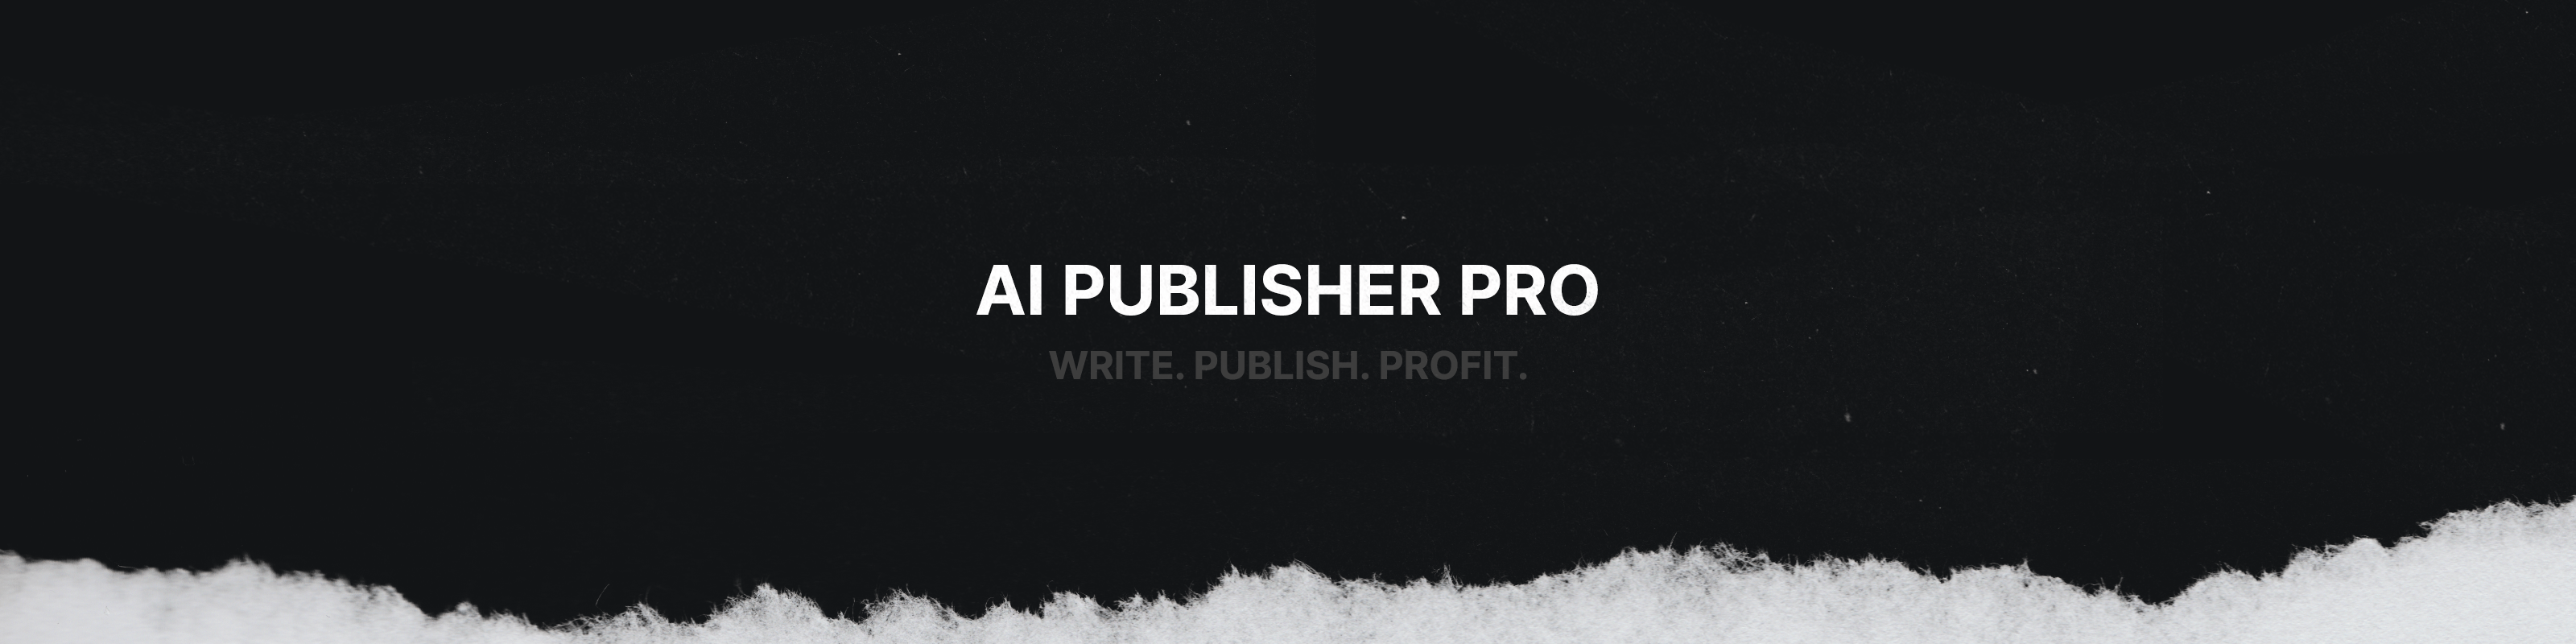 Joe Popelas - AI Publisher Pro (Professional Membership)